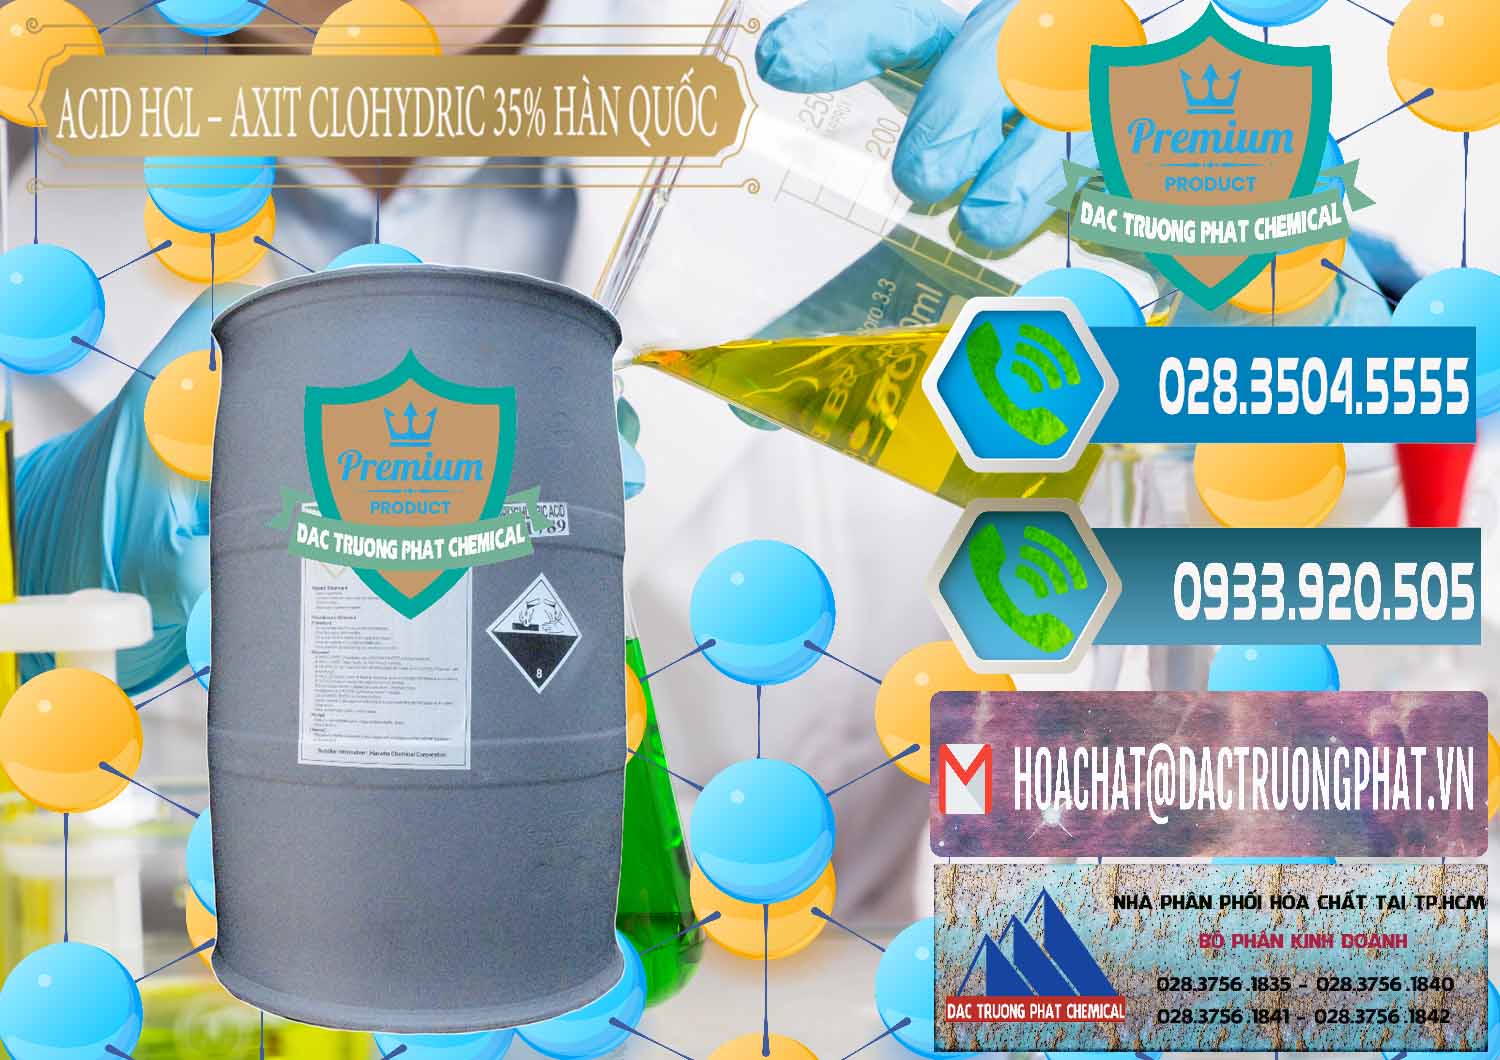 Đơn vị chuyên phân phối ( bán ) Acid HCL - Axit Cohidric 35% Hàn Quốc Korea - 0011 - Công ty chuyên phân phối ( nhập khẩu ) hóa chất tại TP.HCM - congtyhoachat.net